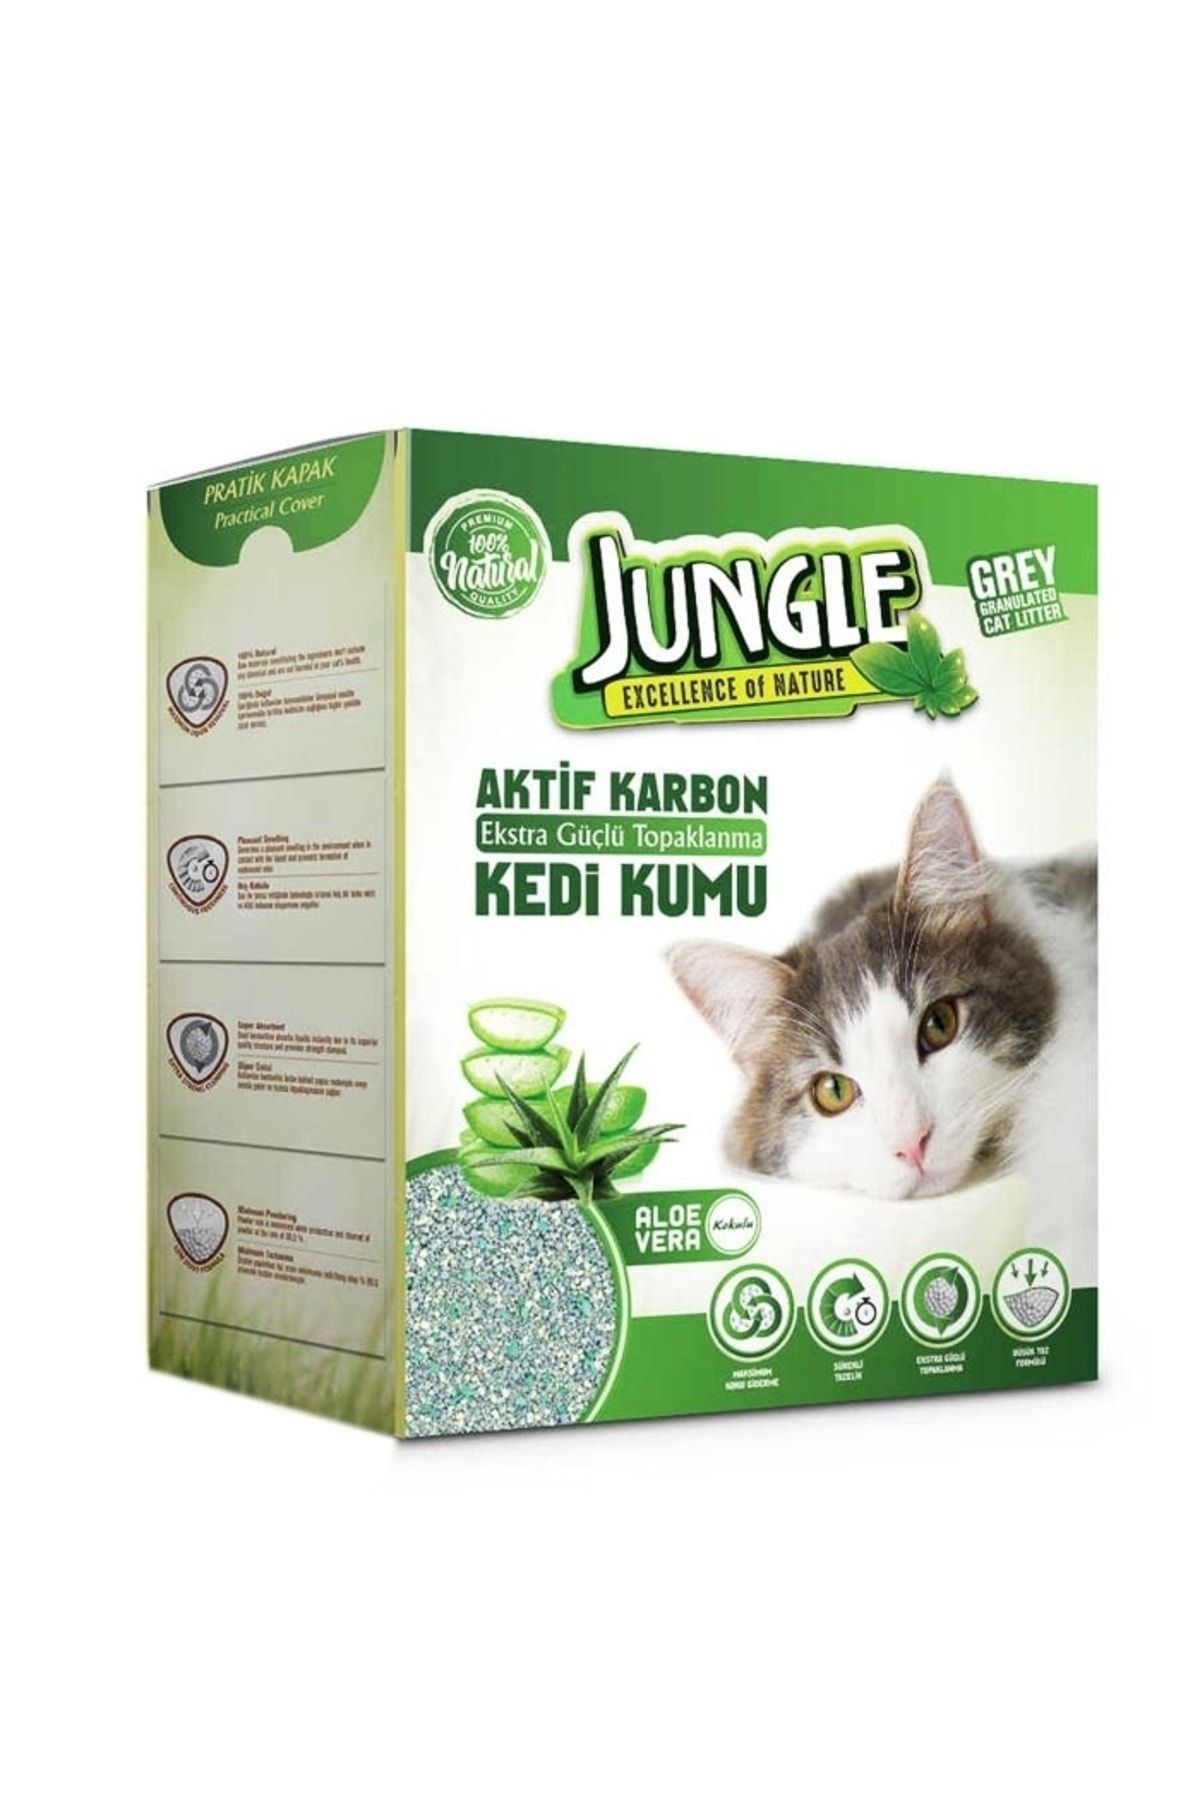 Jungle 6 Lt Karbonlu Grey Aloe Vera Kedi Kumu